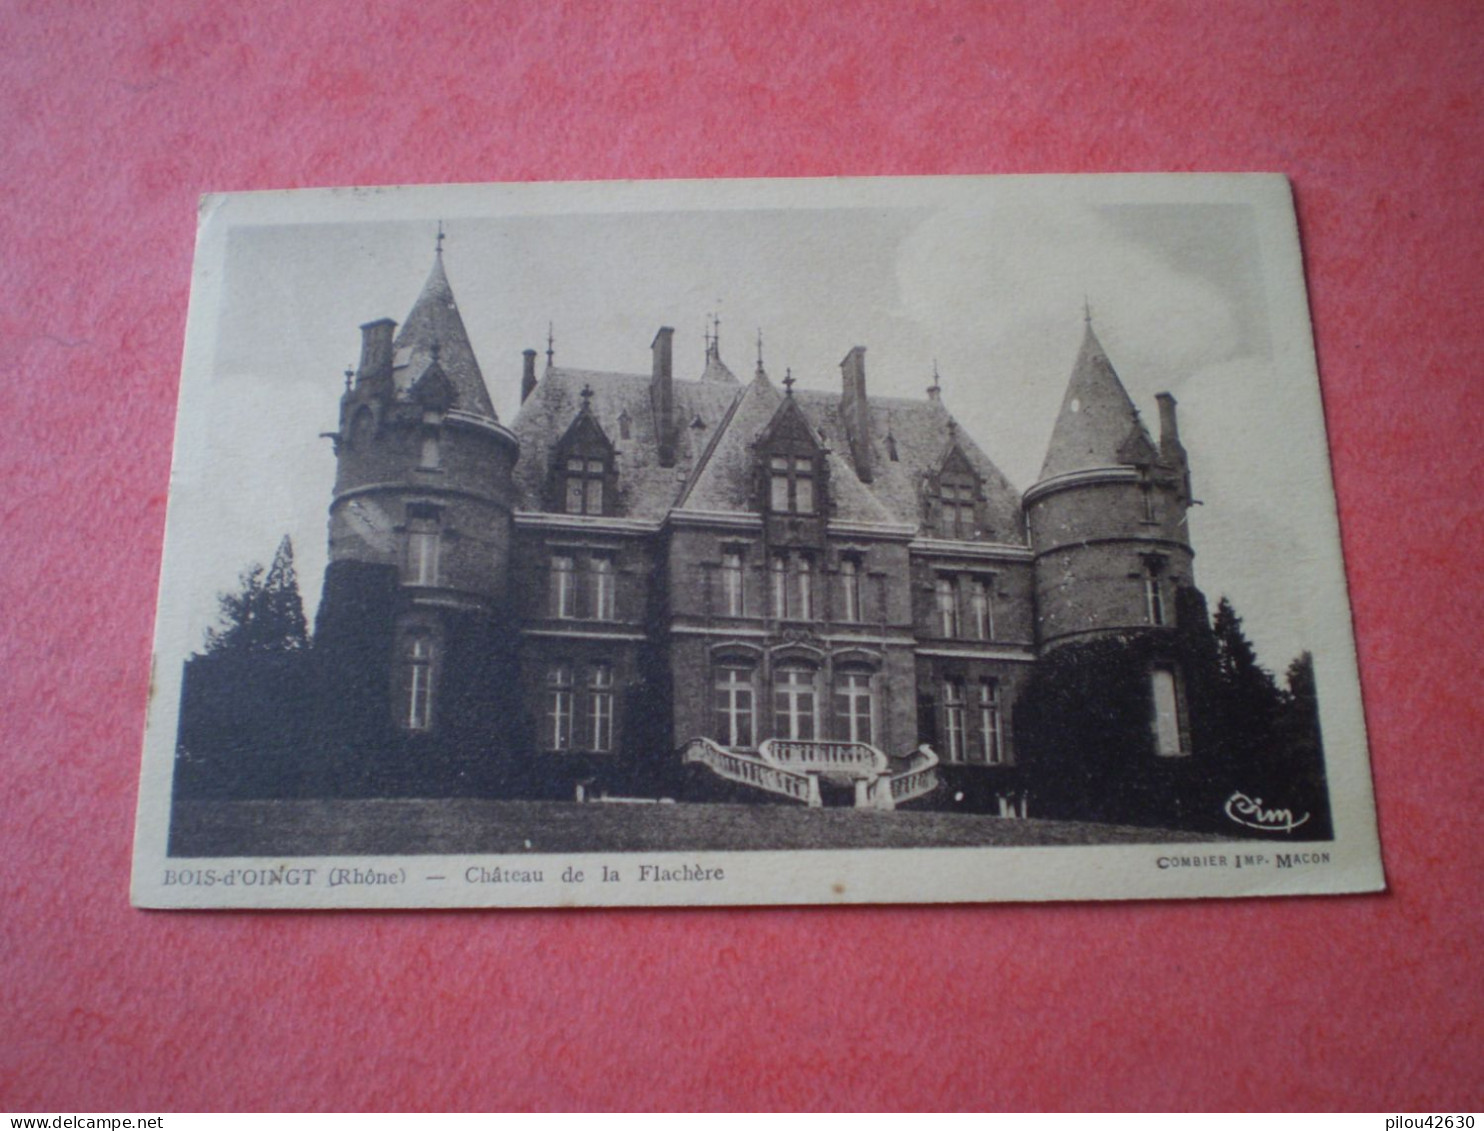 Cachet Horoplan, Année Sur 4 Chiffres Le Bois Doingt 1939 Sur 20c X 2 Mercure, Rhône, Château De La Flachère - Manual Postmarks